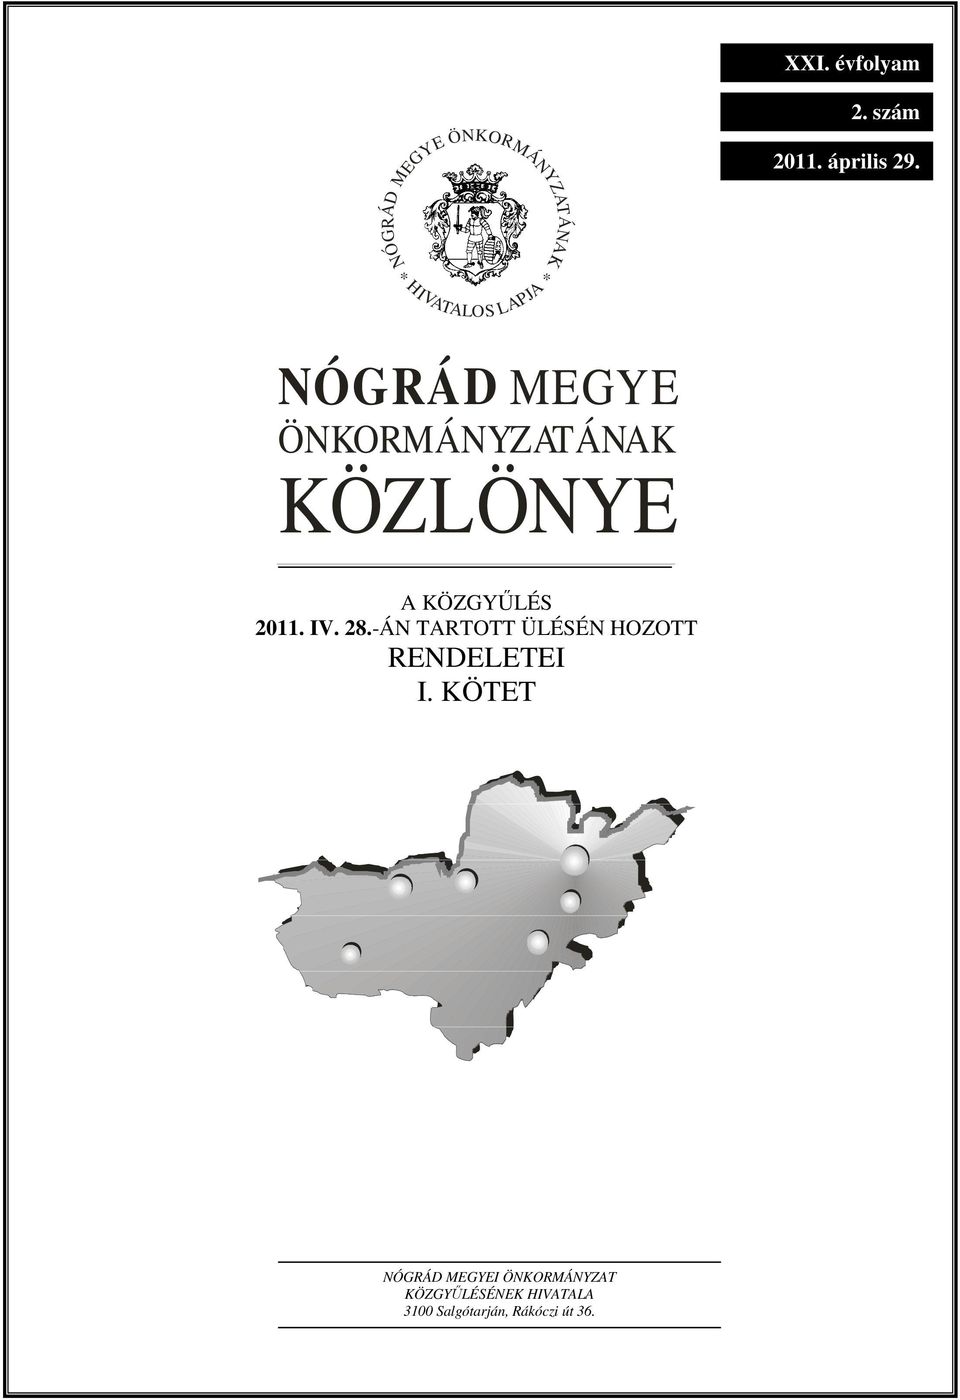 ÖNKORMÁNYZATÁNAK KÖZLÖNYE A KÖZGYŐLÉS 2011. IV. 28.